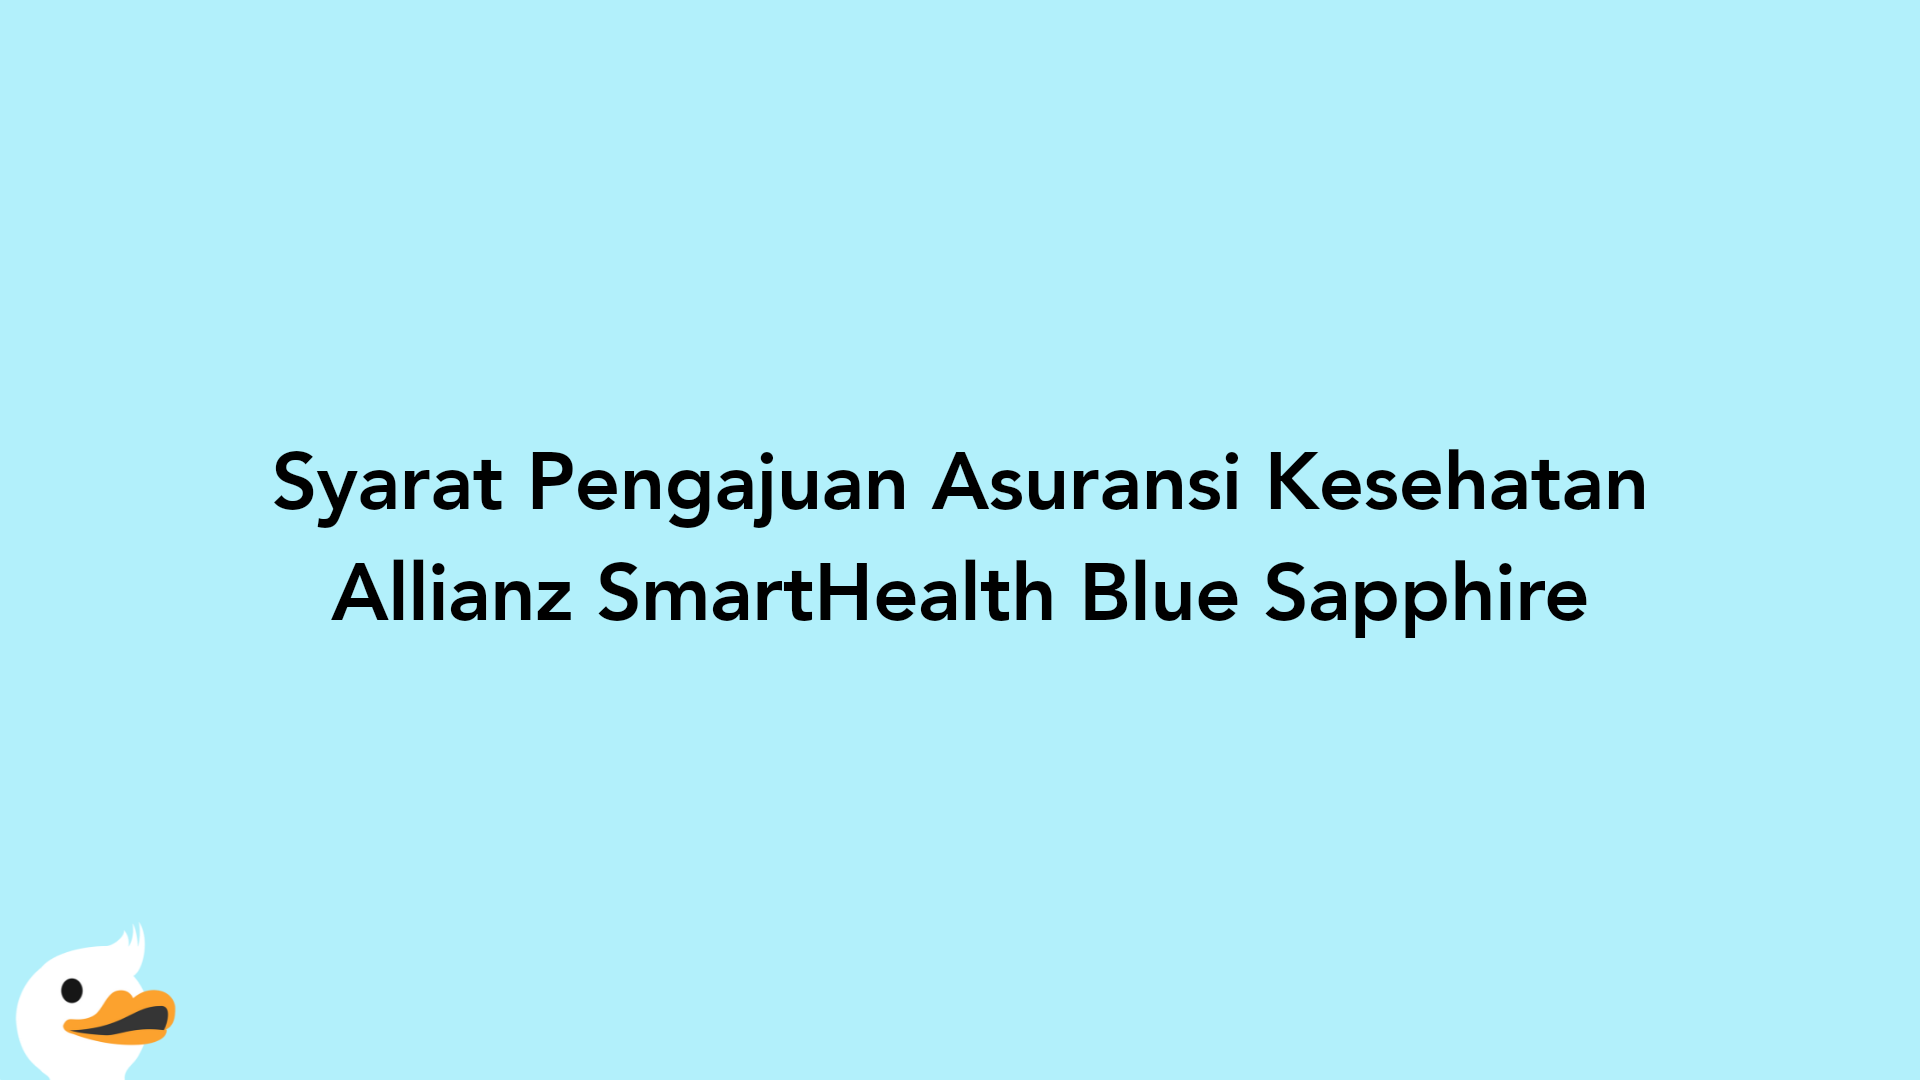 Syarat Pengajuan Asuransi Kesehatan Allianz SmartHealth Blue Sapphire